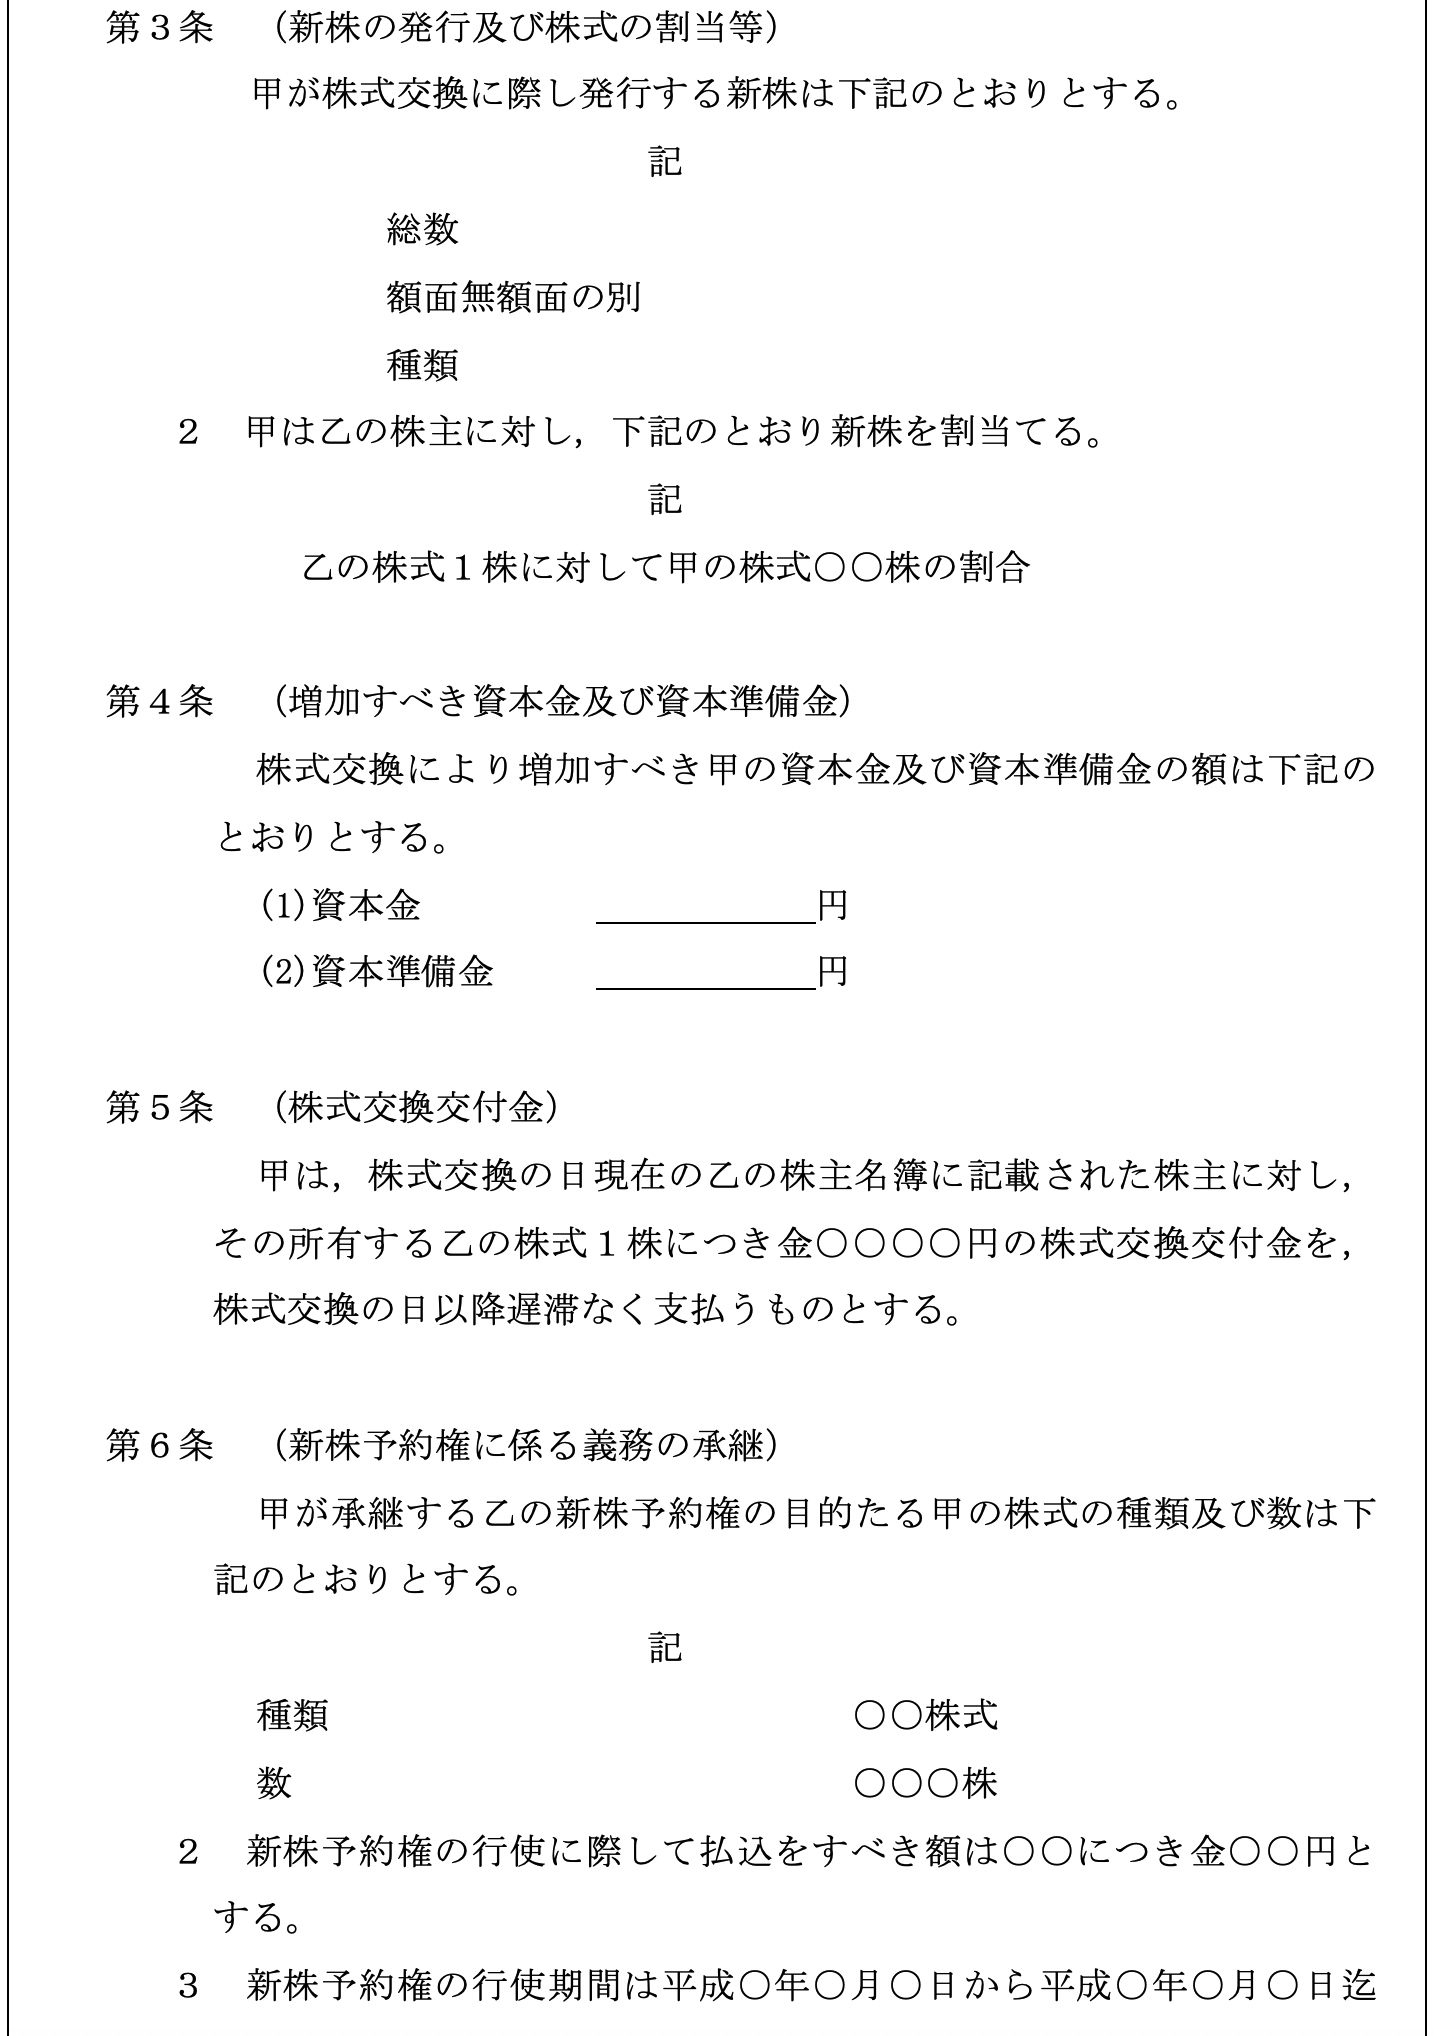 株式交換契約書 マニュアル 弁護士法人朝日中央綜合法律事務所